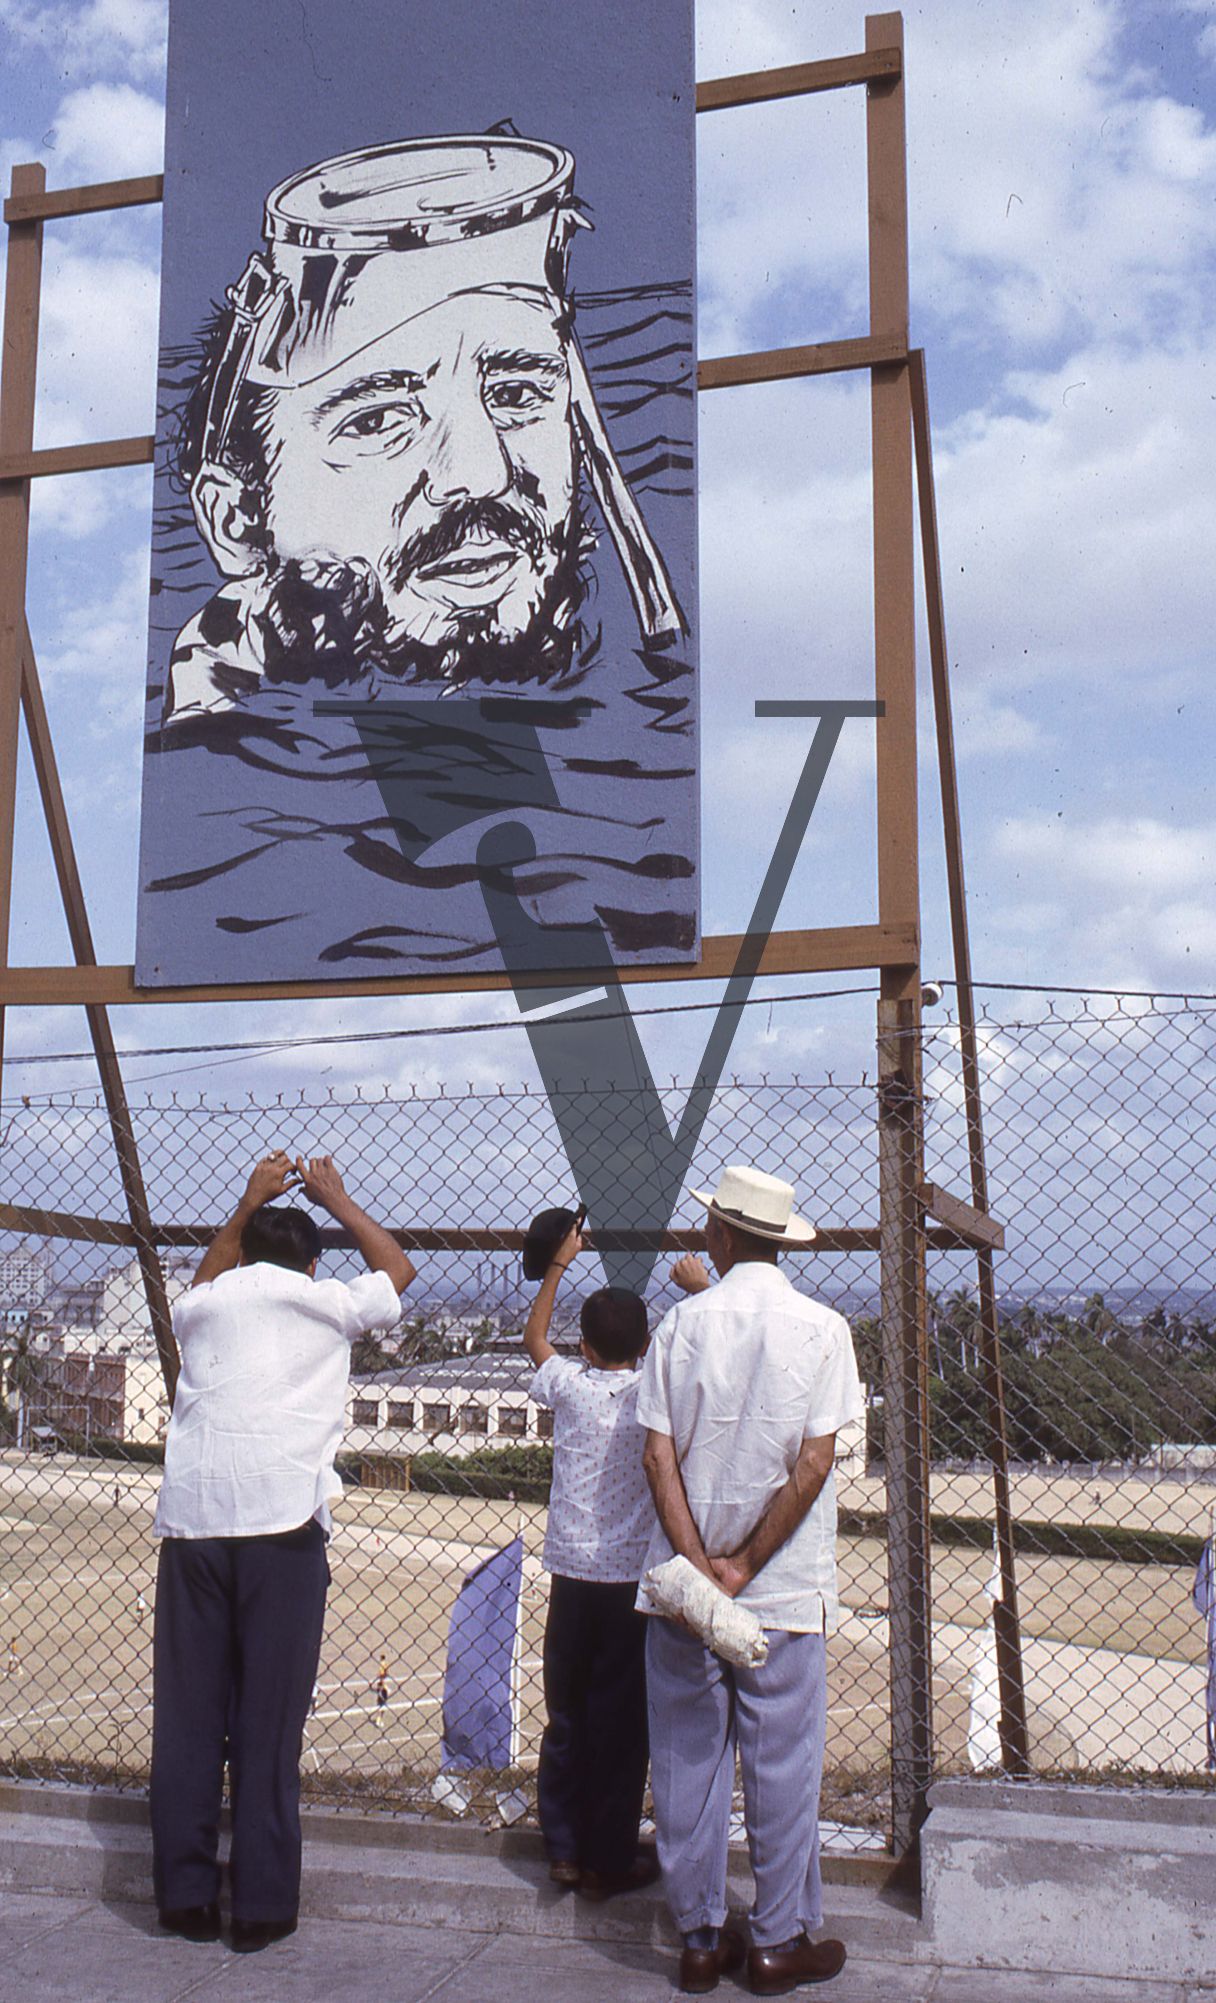 Cuba, Fidel Castro sports billboards, Castro in snorkel.